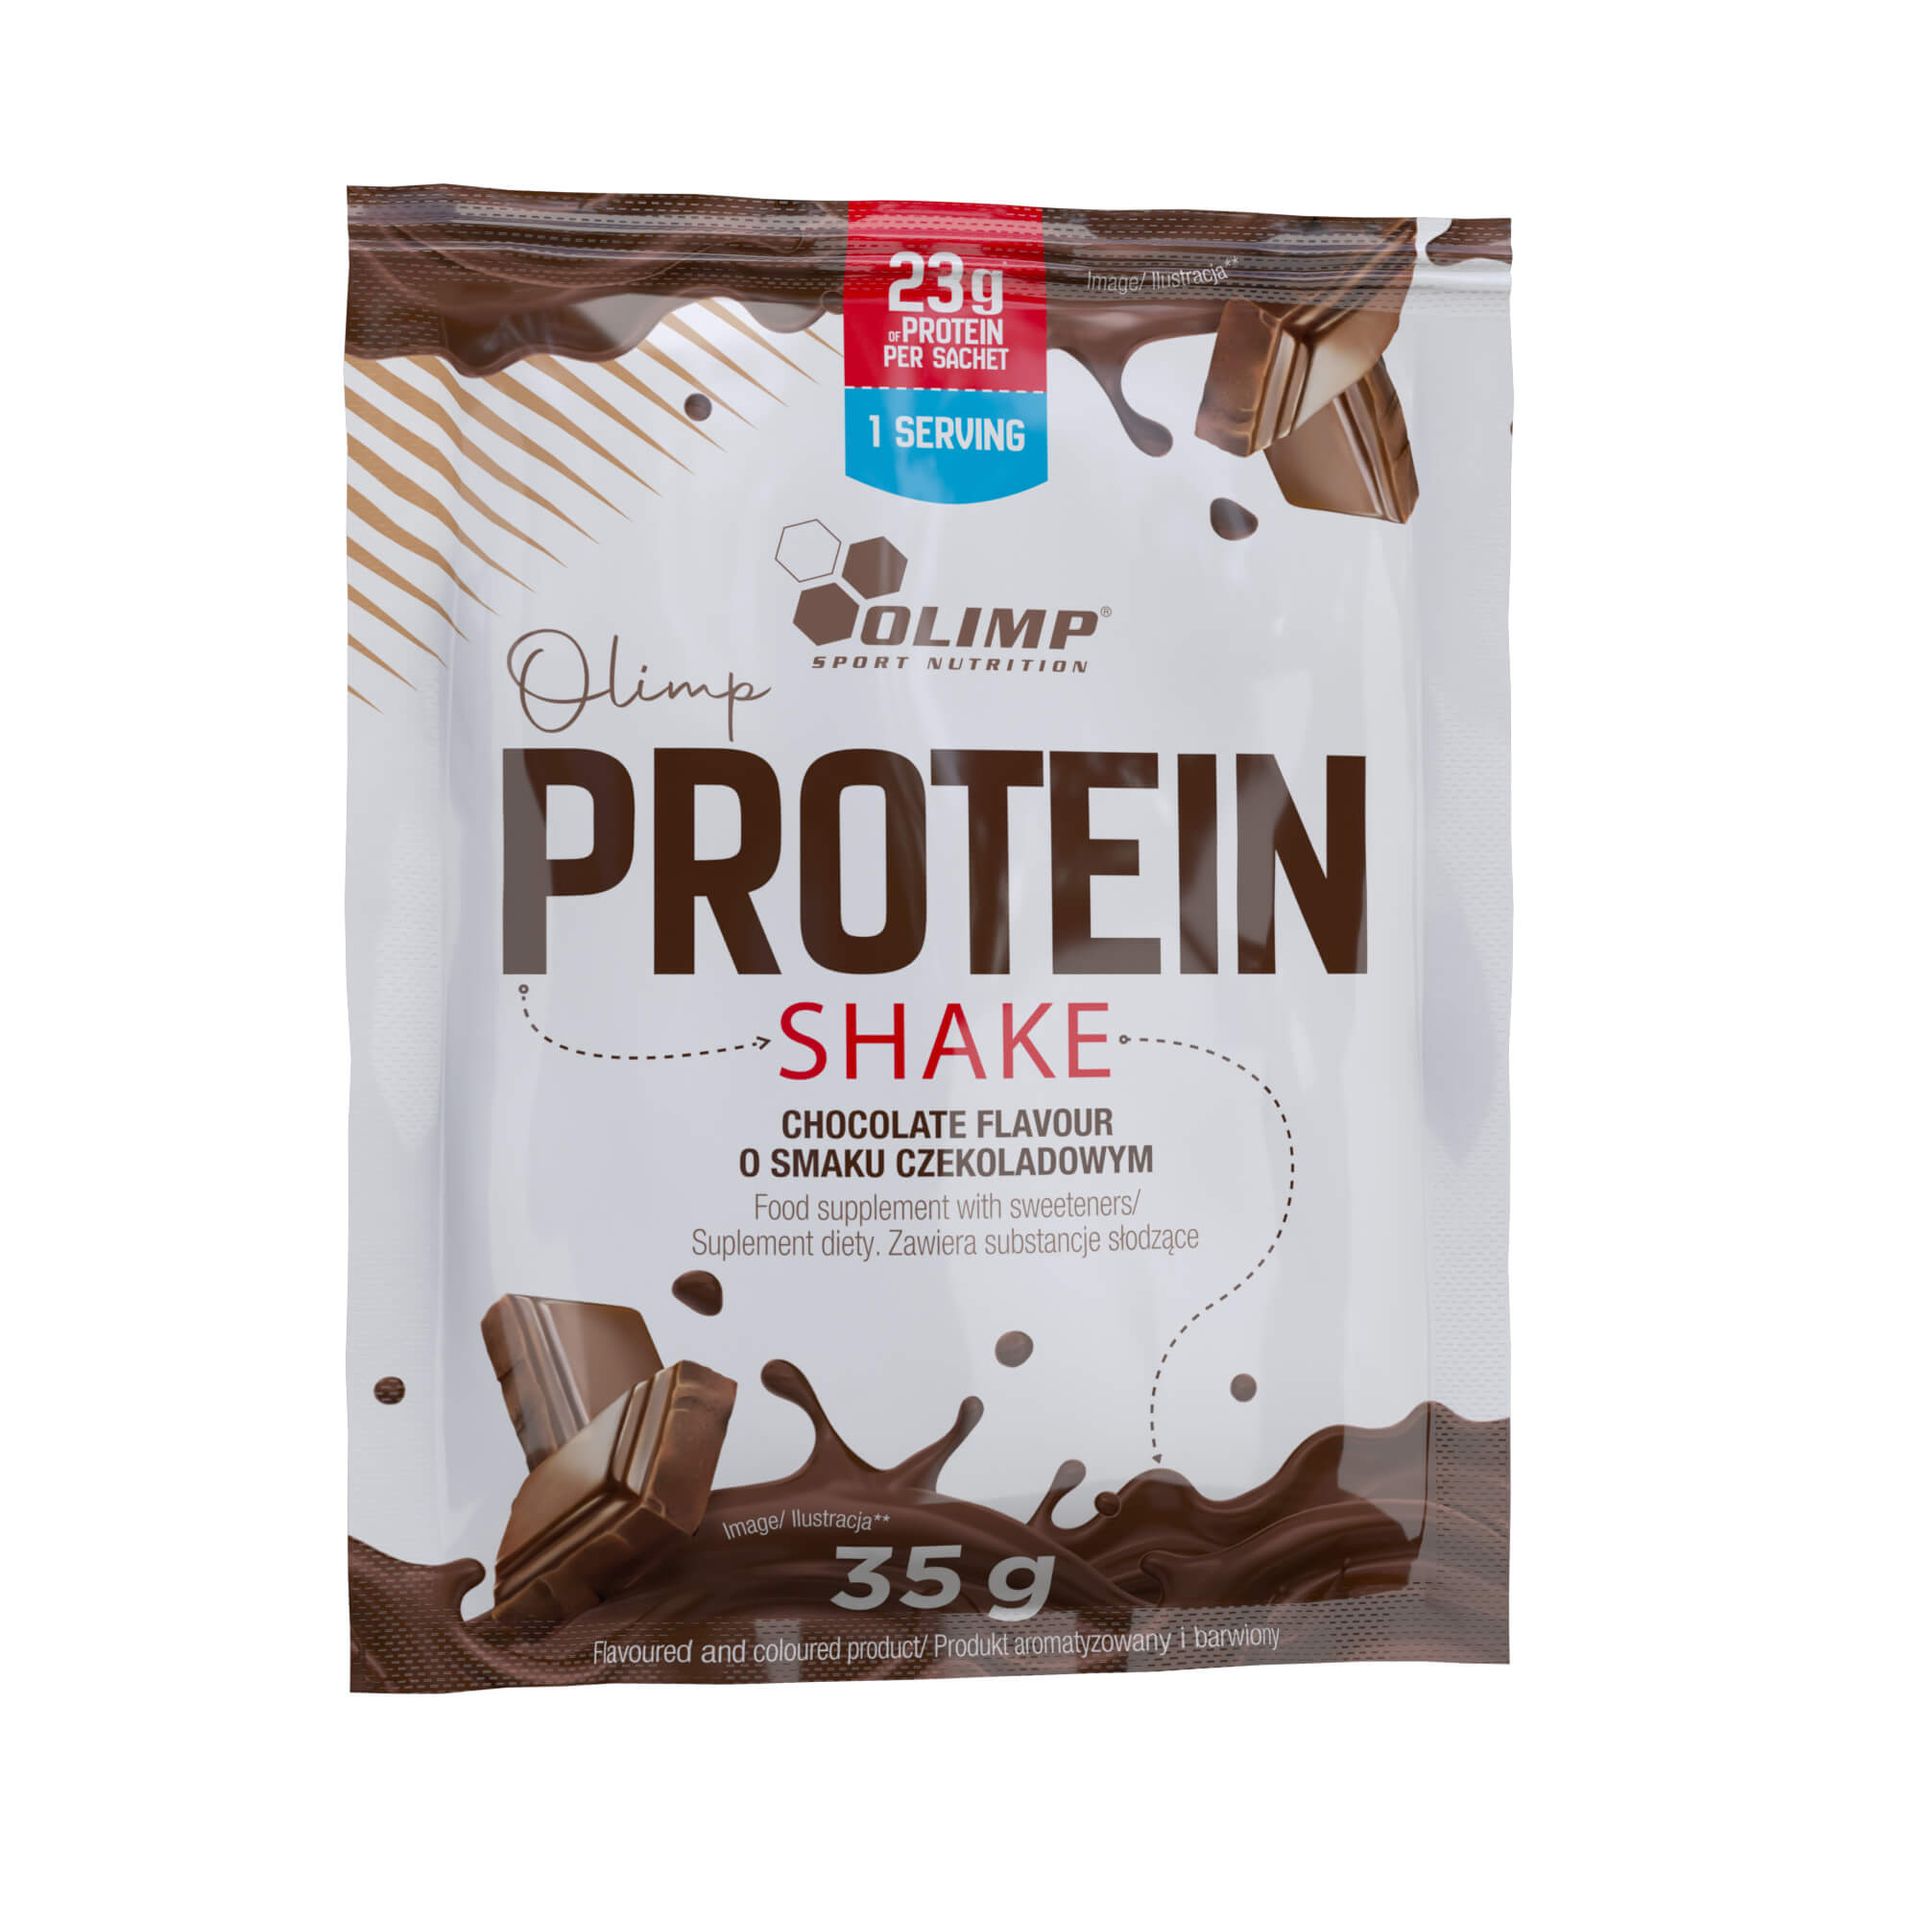 Zdjęcia - Odżywka białkowa Olimp Protein Shake - 35 g chocolate 